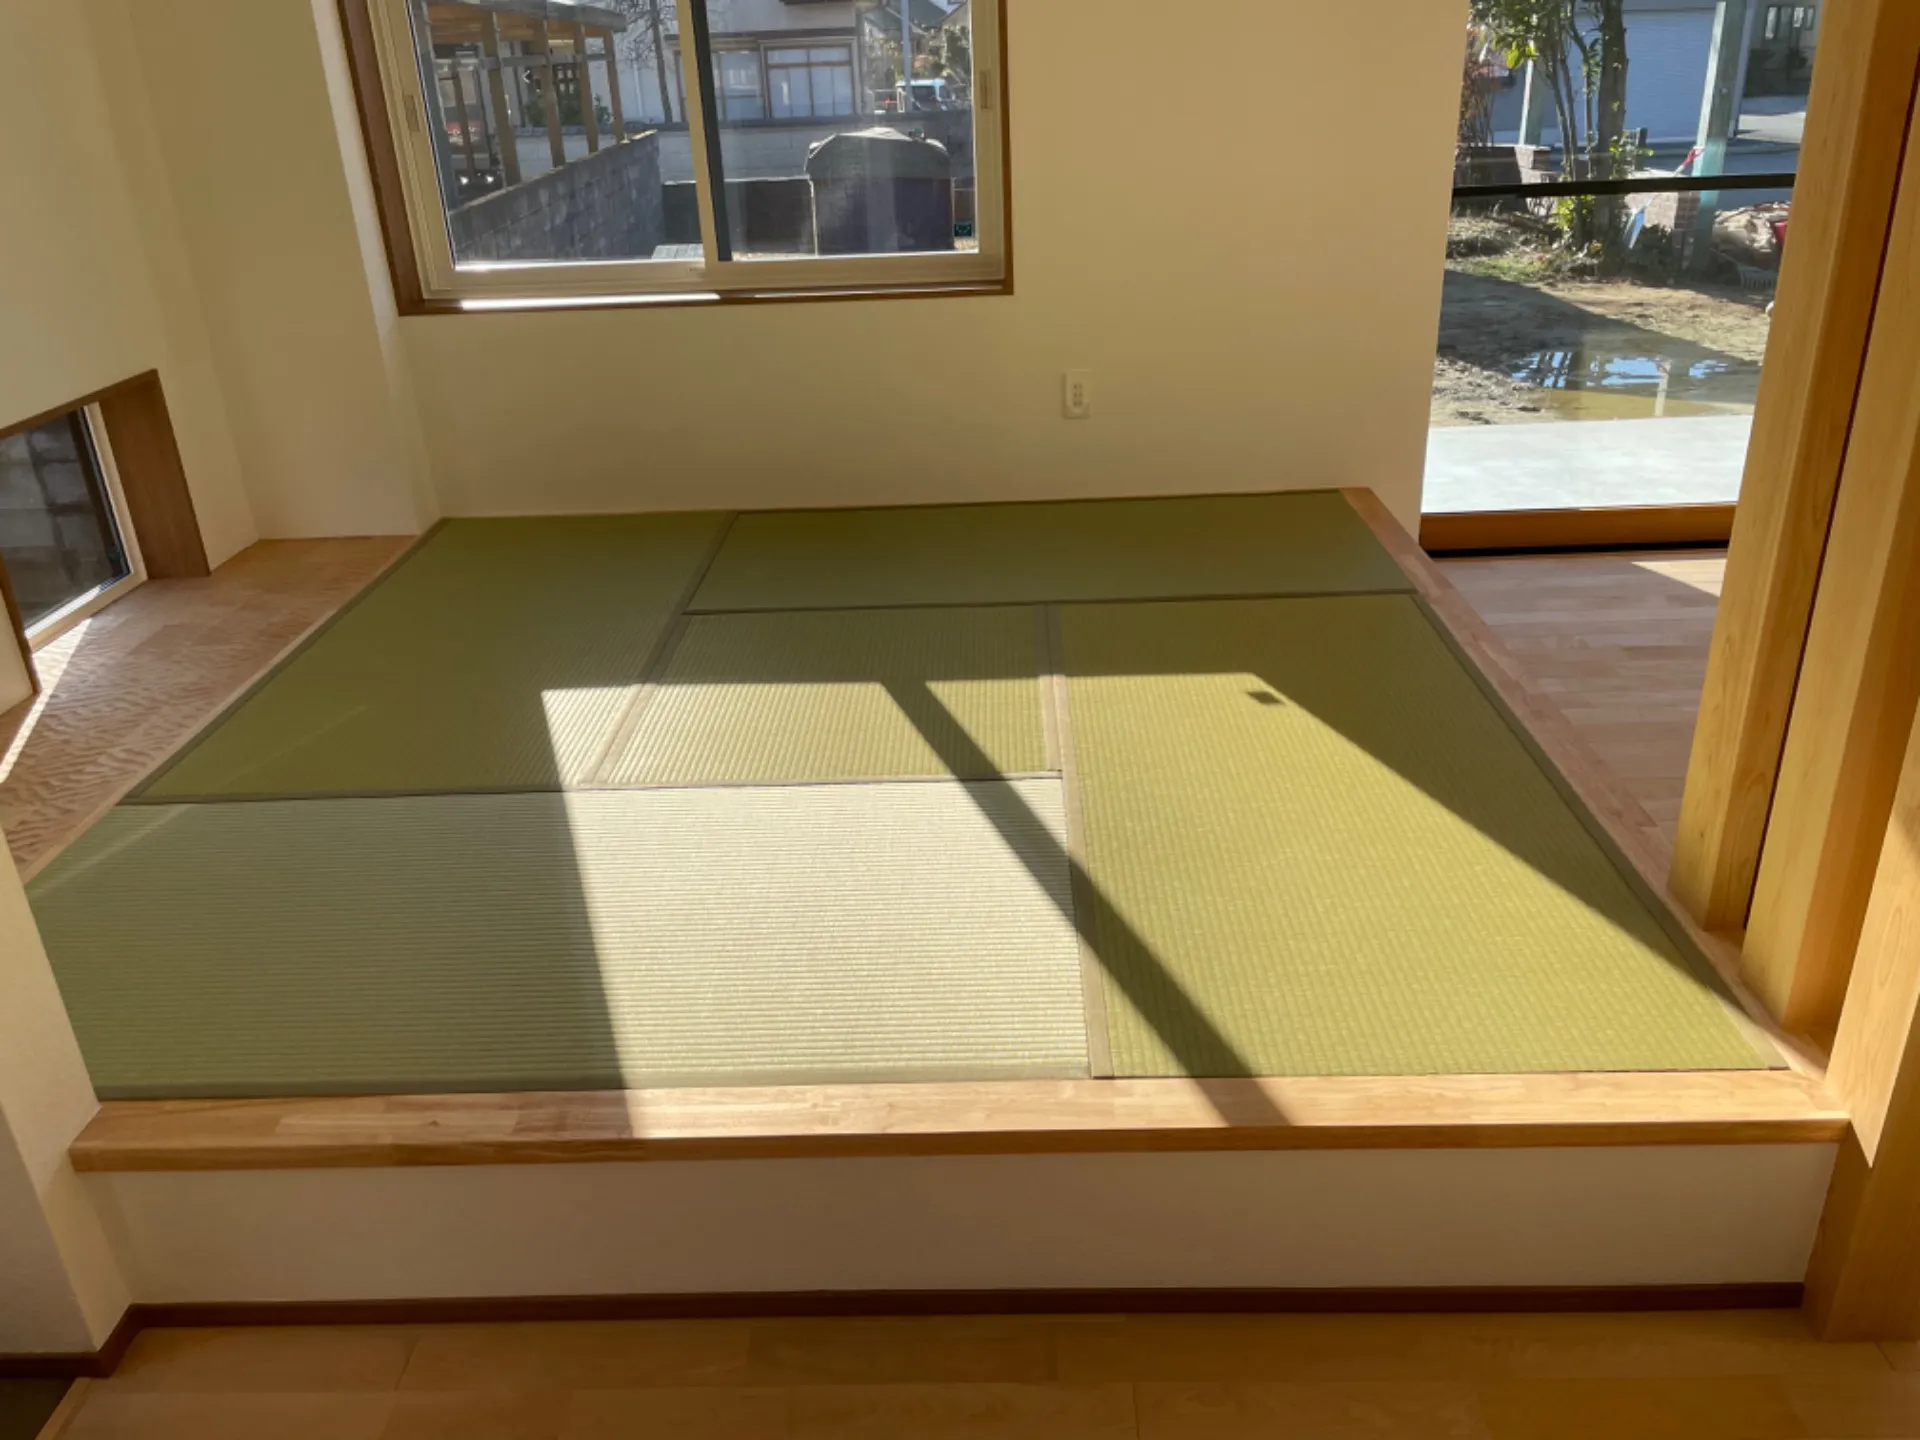 檜床30㍉・畳表（ダイケン100A銀白色）使用。